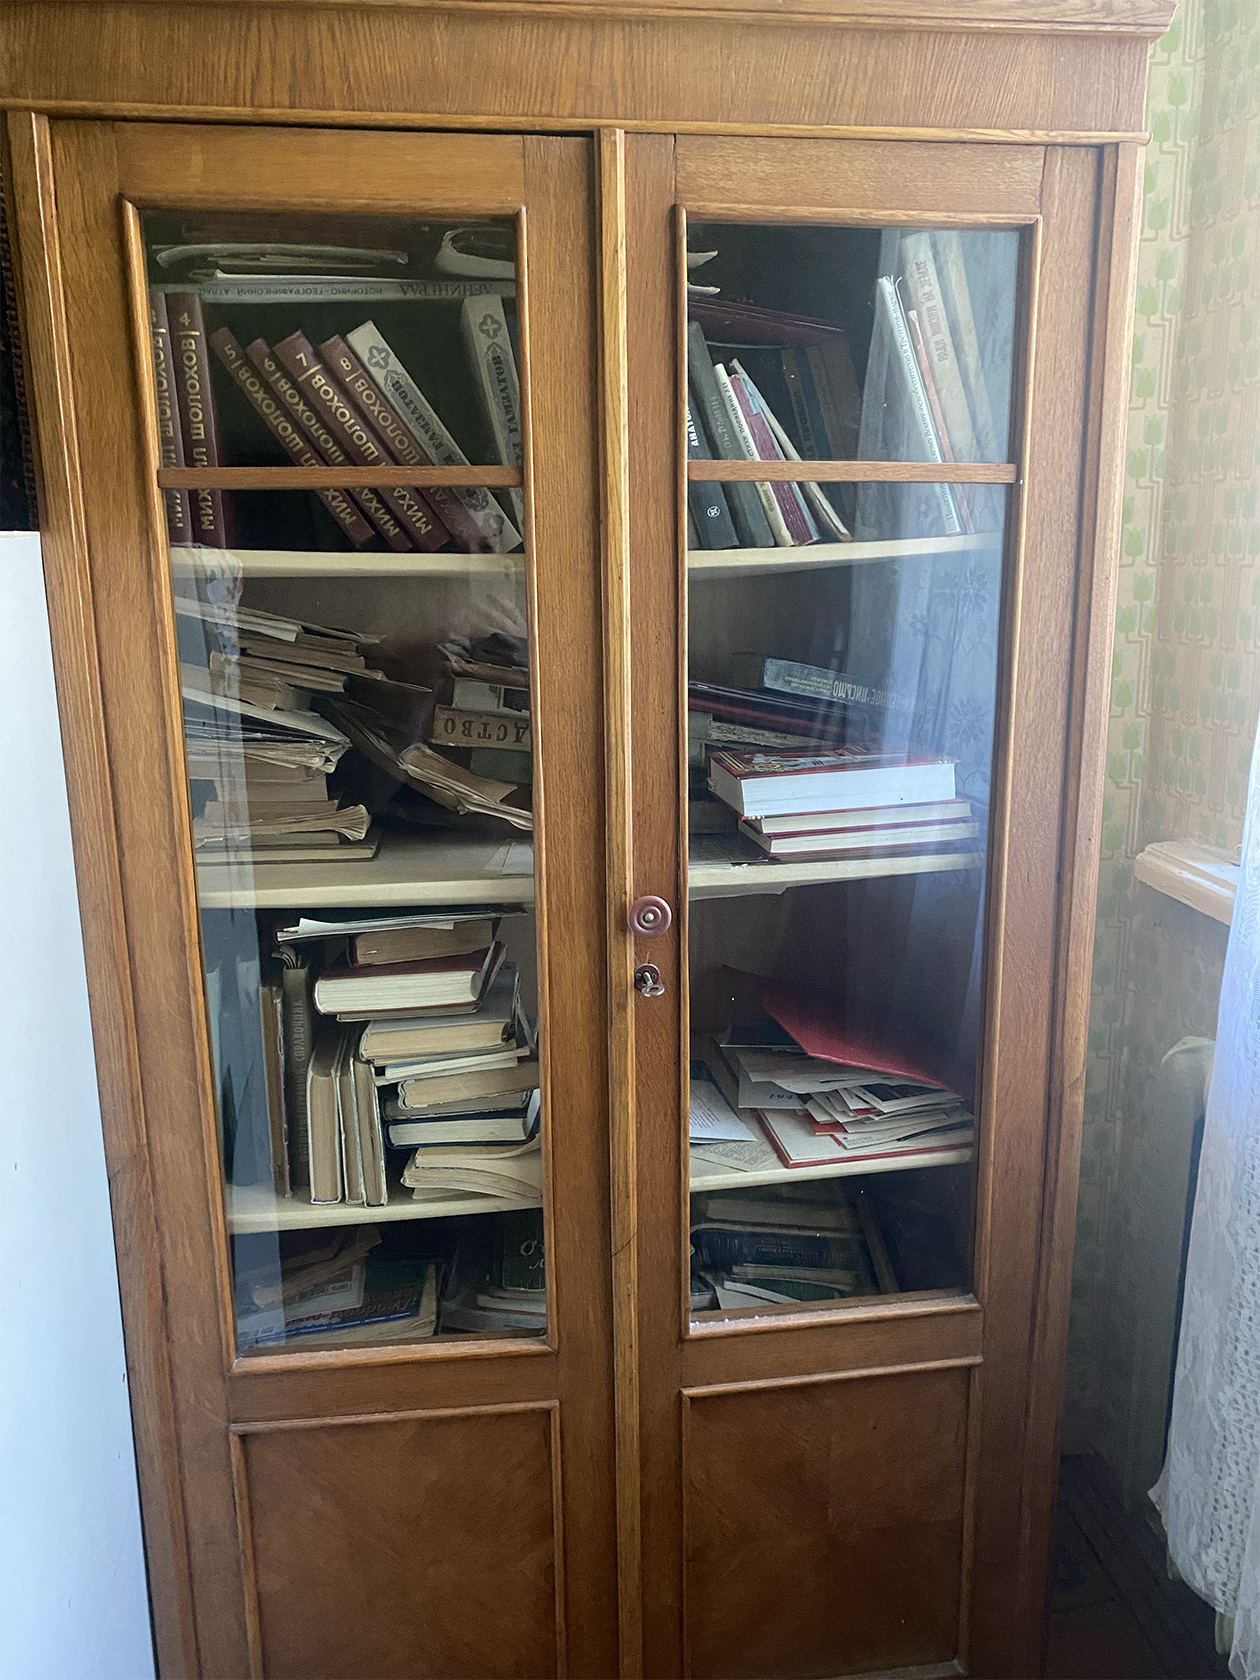 Это книжный шкаф, который достался нам от предыдущих владельцев квартиры. Он тоже требует ремонта, и я пока думаю, как его лучше сделать